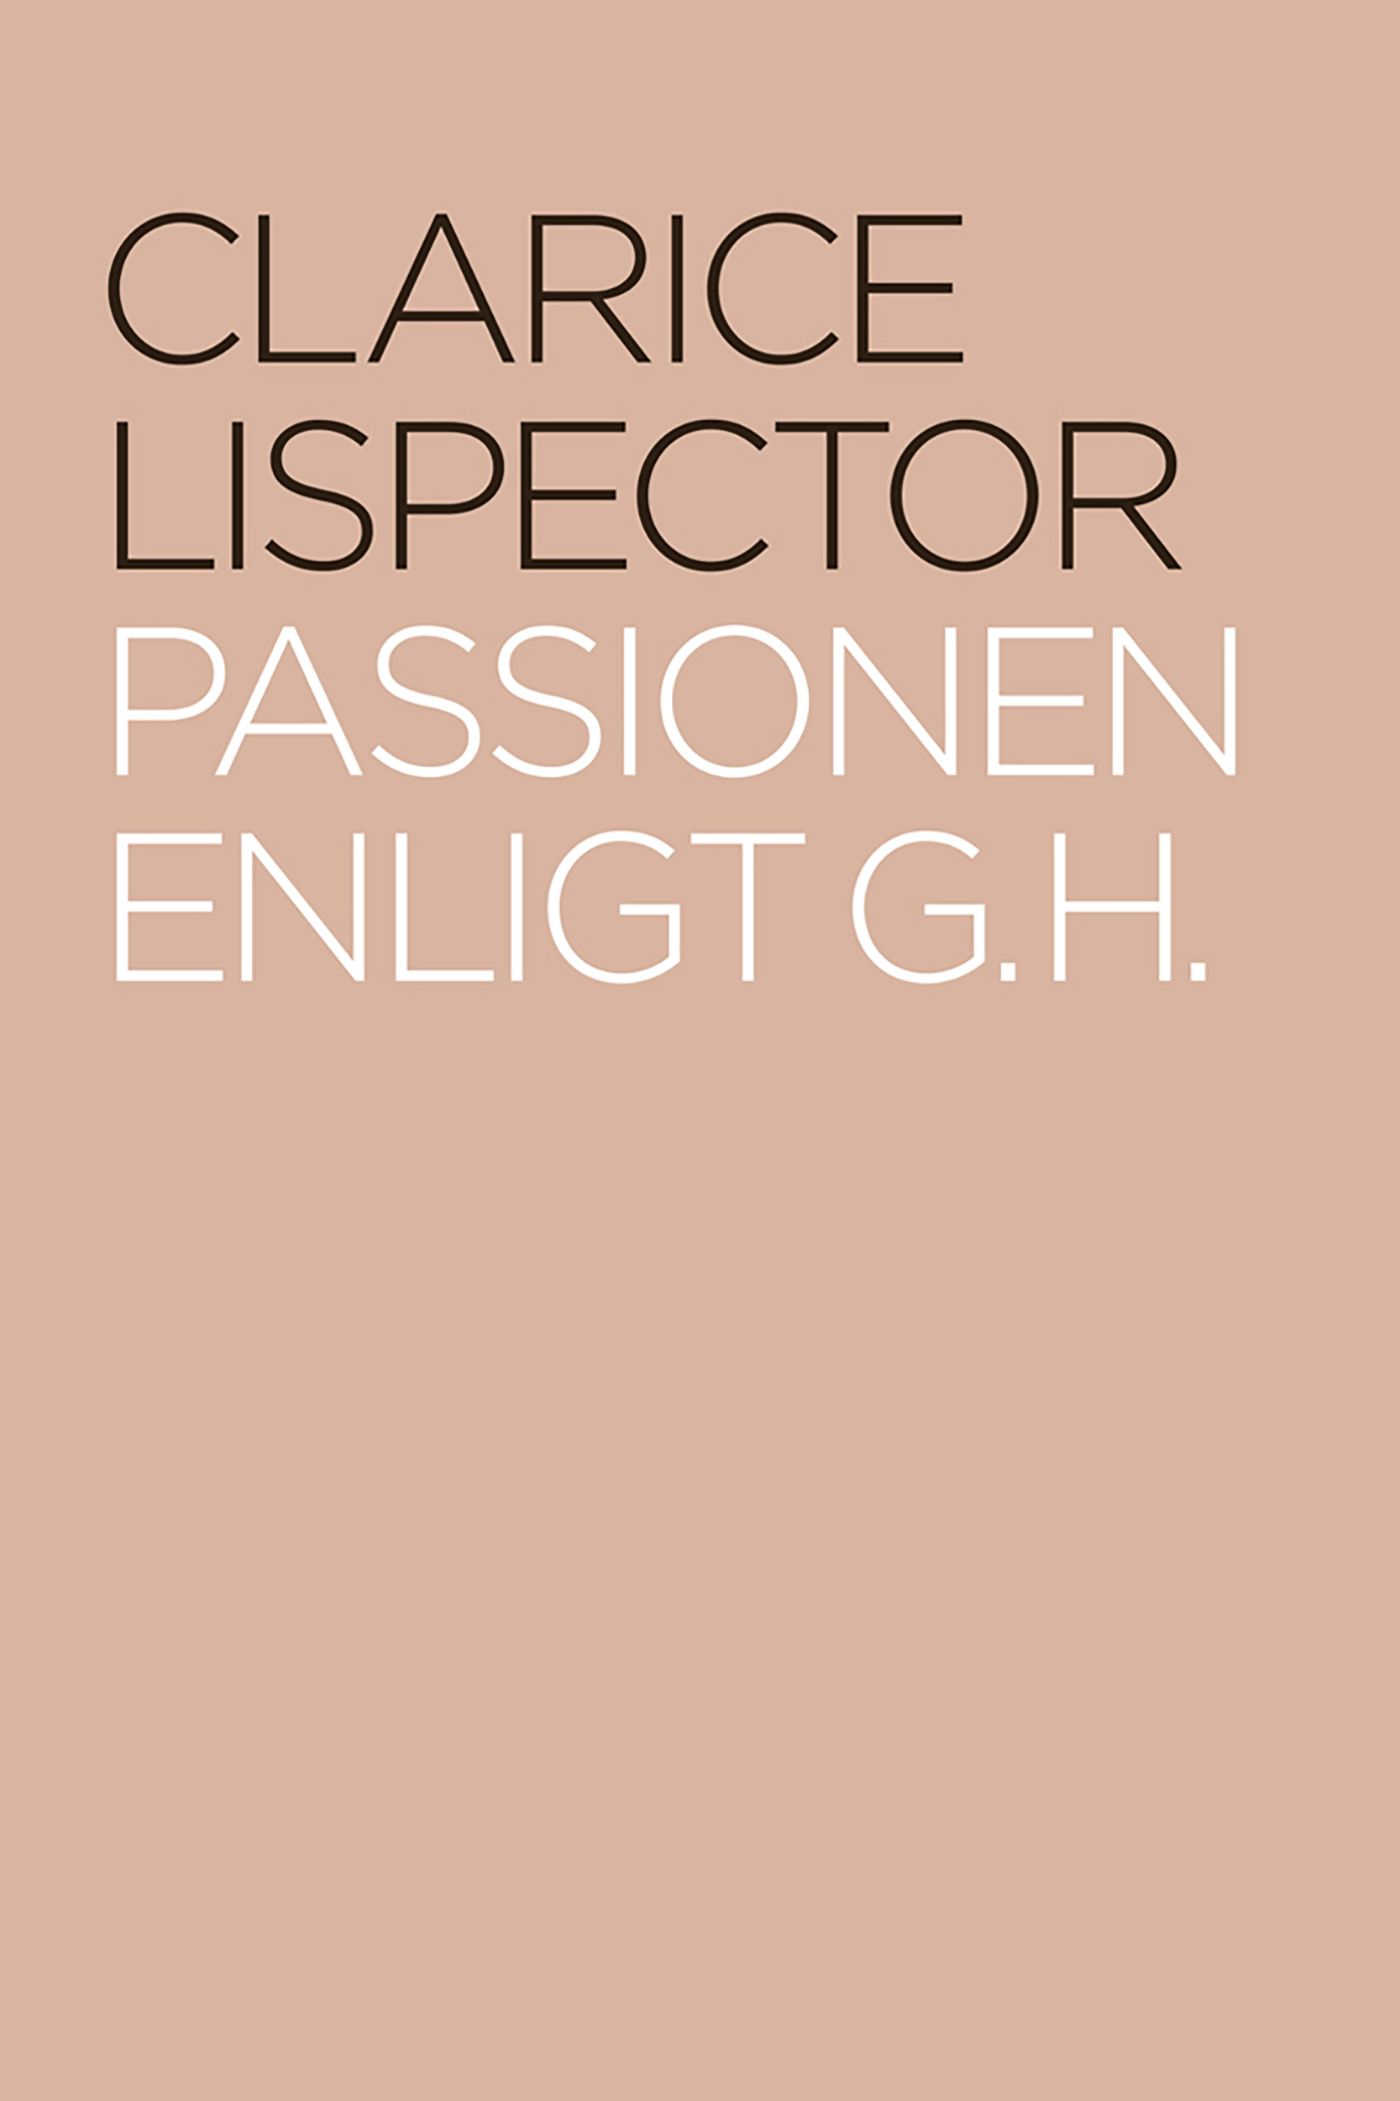 Passionen enligt G. H., e-bok av Clarice Lispector